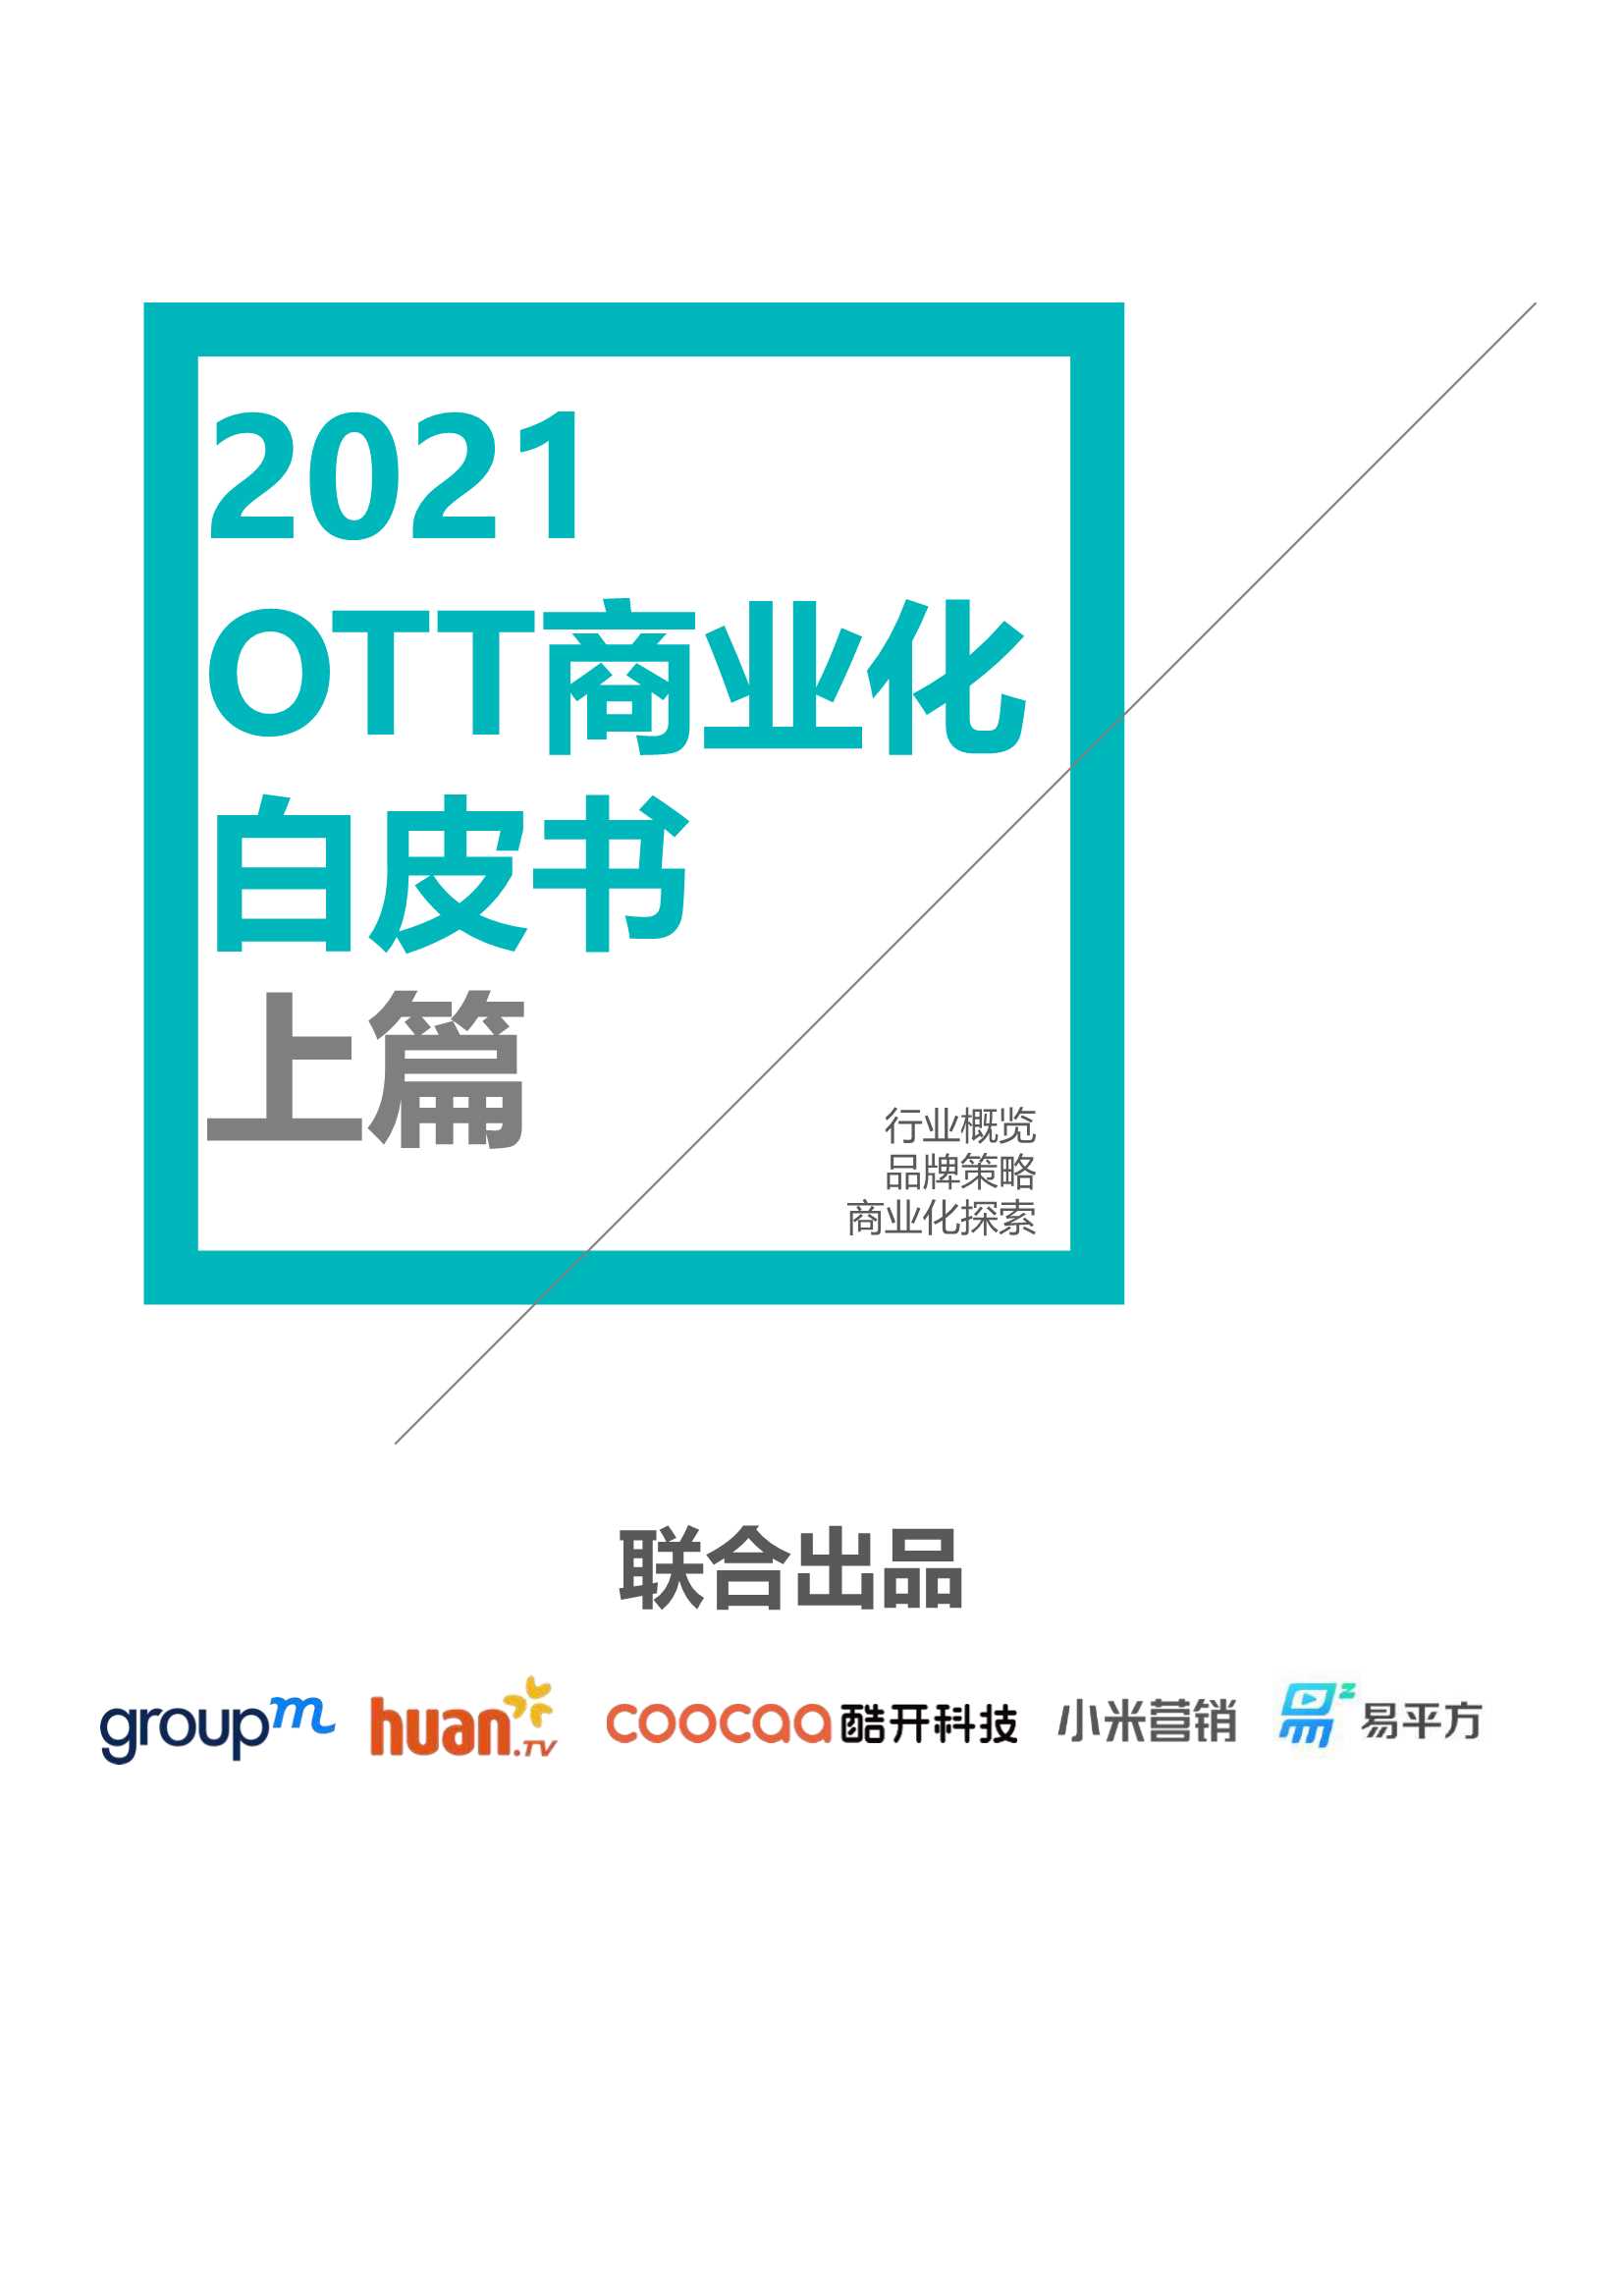 群邑-2021 OTT商业化白皮书-2021.07-48页